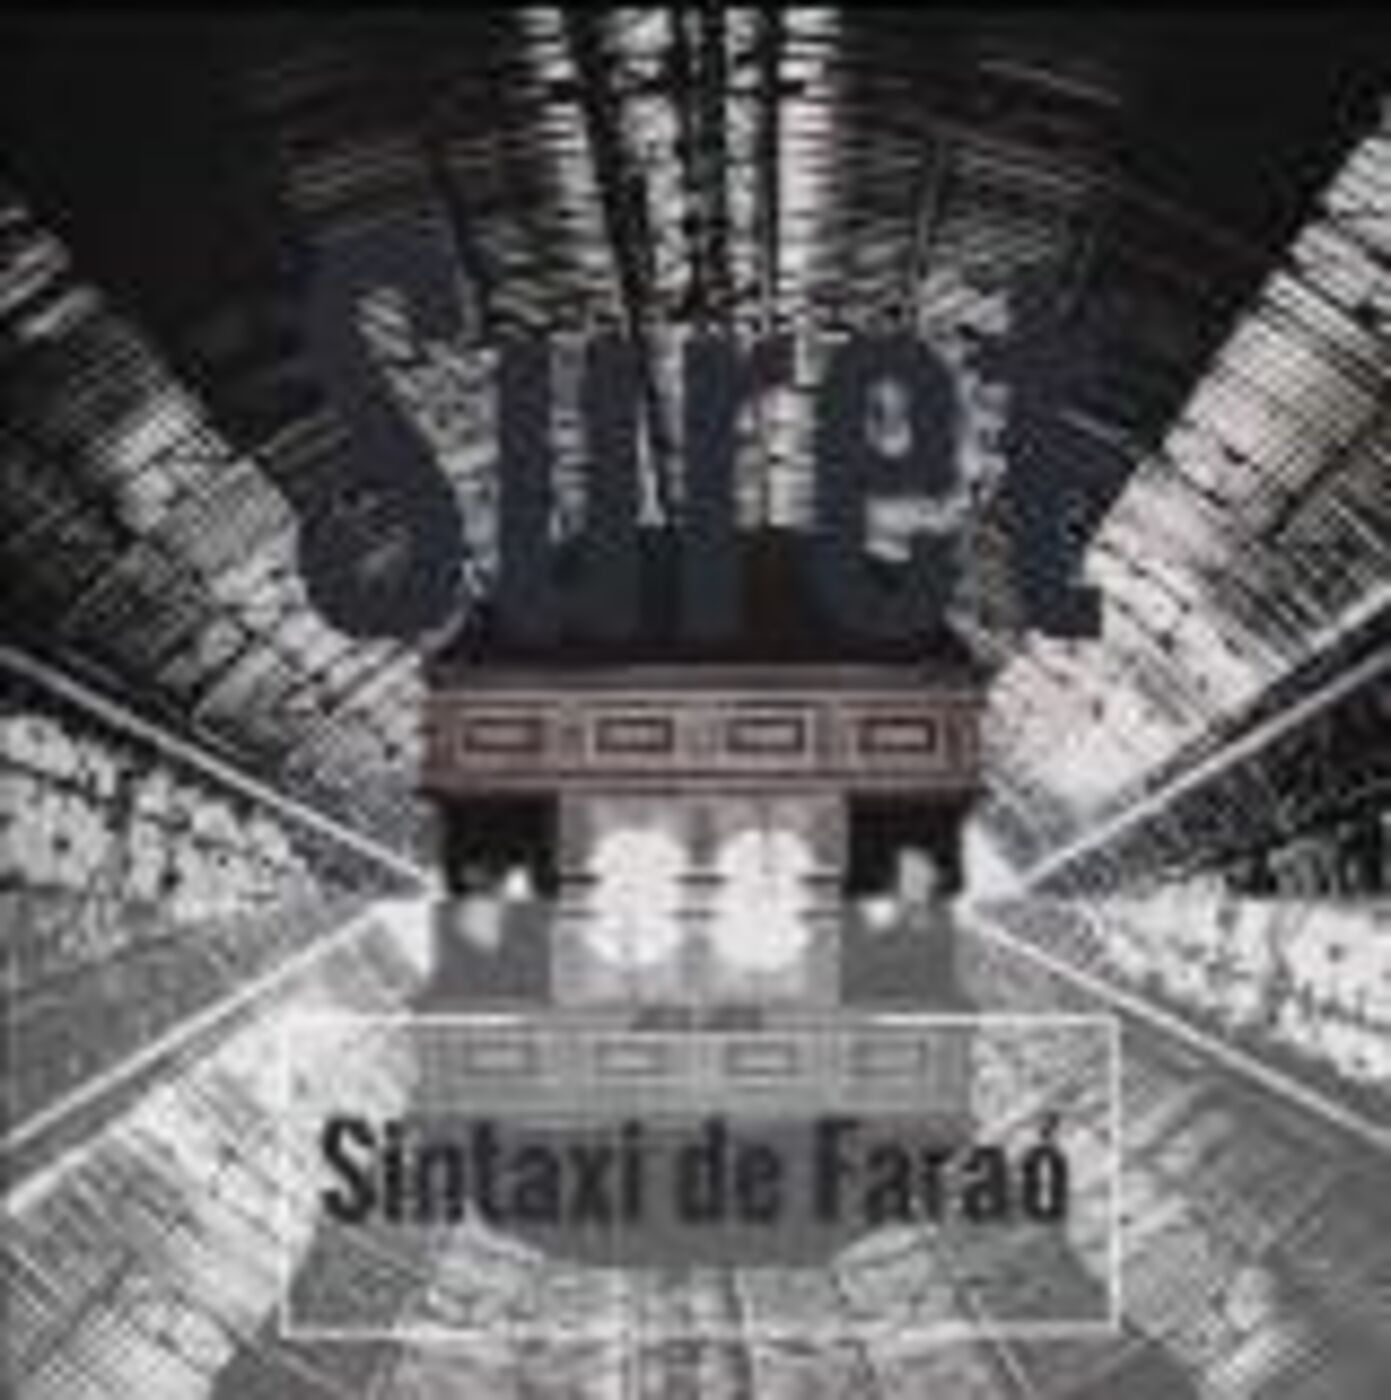 Suret - Sintaxi de Faraó  | musica en valencià